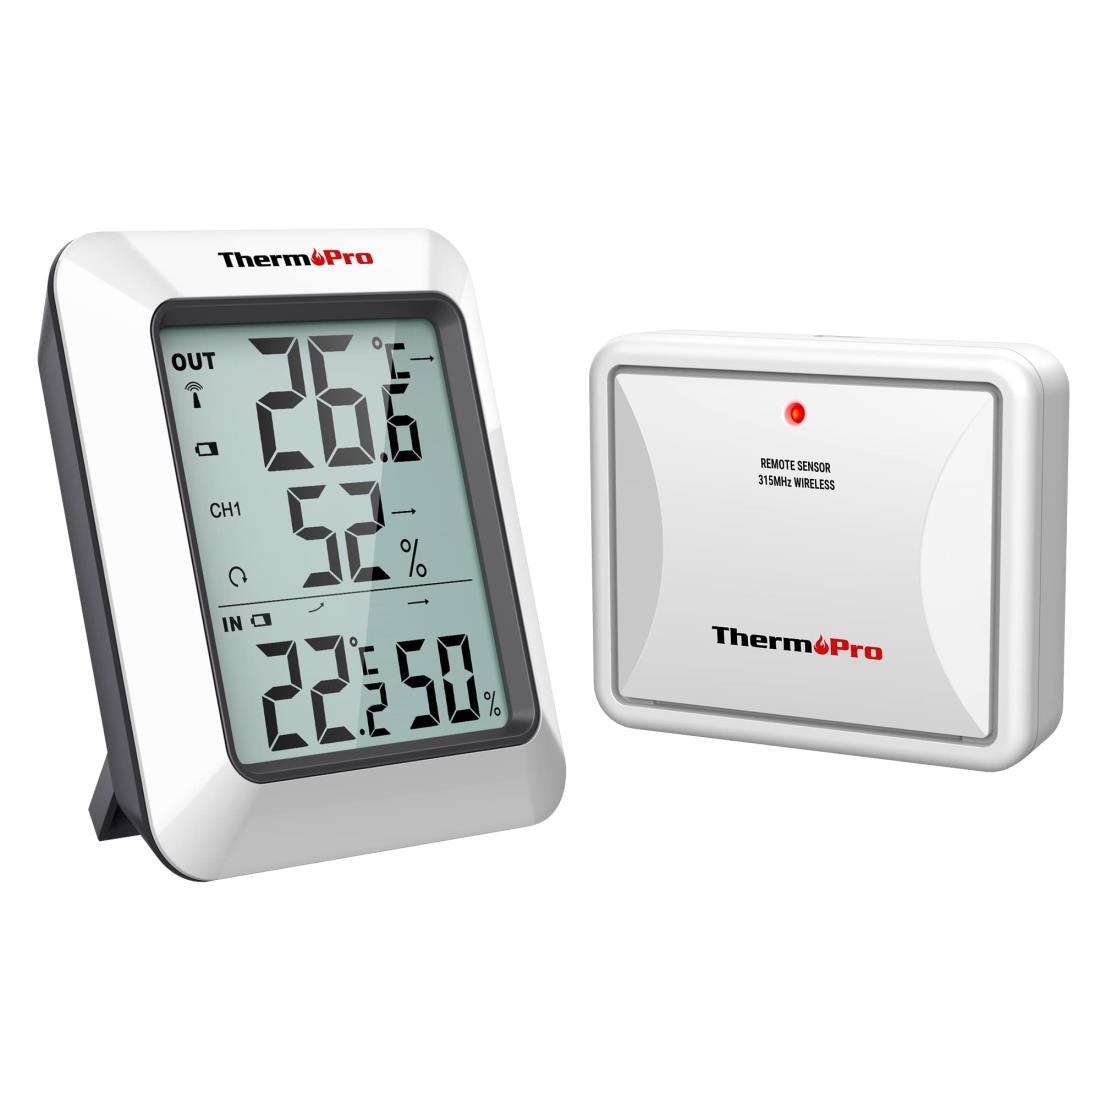 ThermoProサーモプロ 湿度計 温湿度計ワイヤレス 室外 室内温度計 最高最低温湿度値表示 高精度 LCD大液晶画面 置き掛け両用タイプ マグネット付 TP-60S